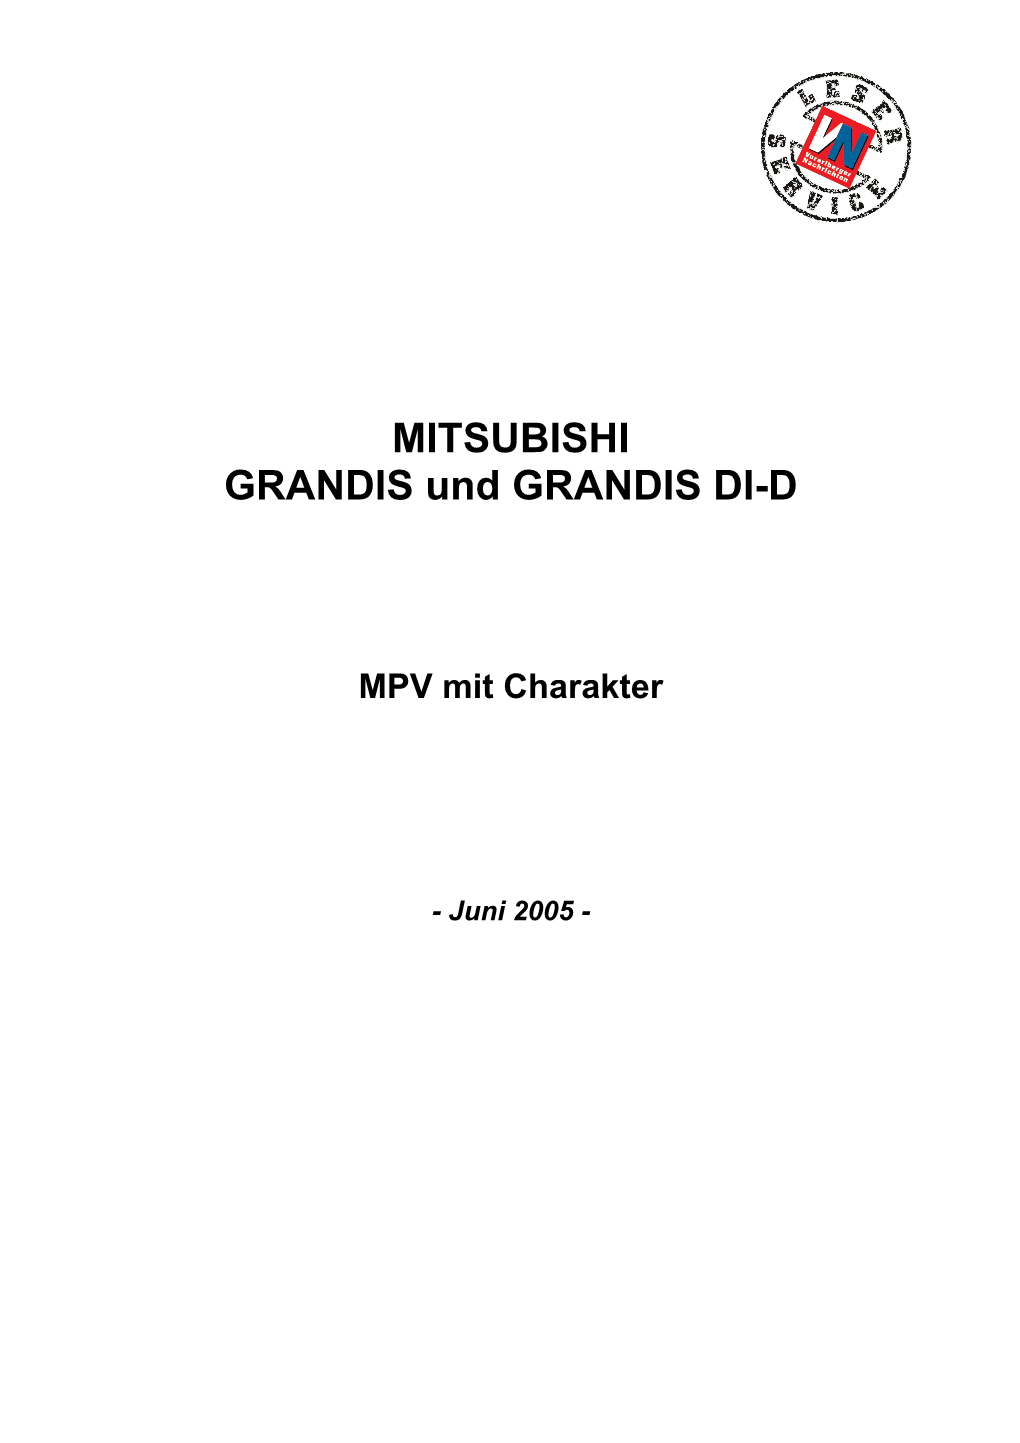 MITSUBISHI GRANDIS Und GRANDIS DI-D